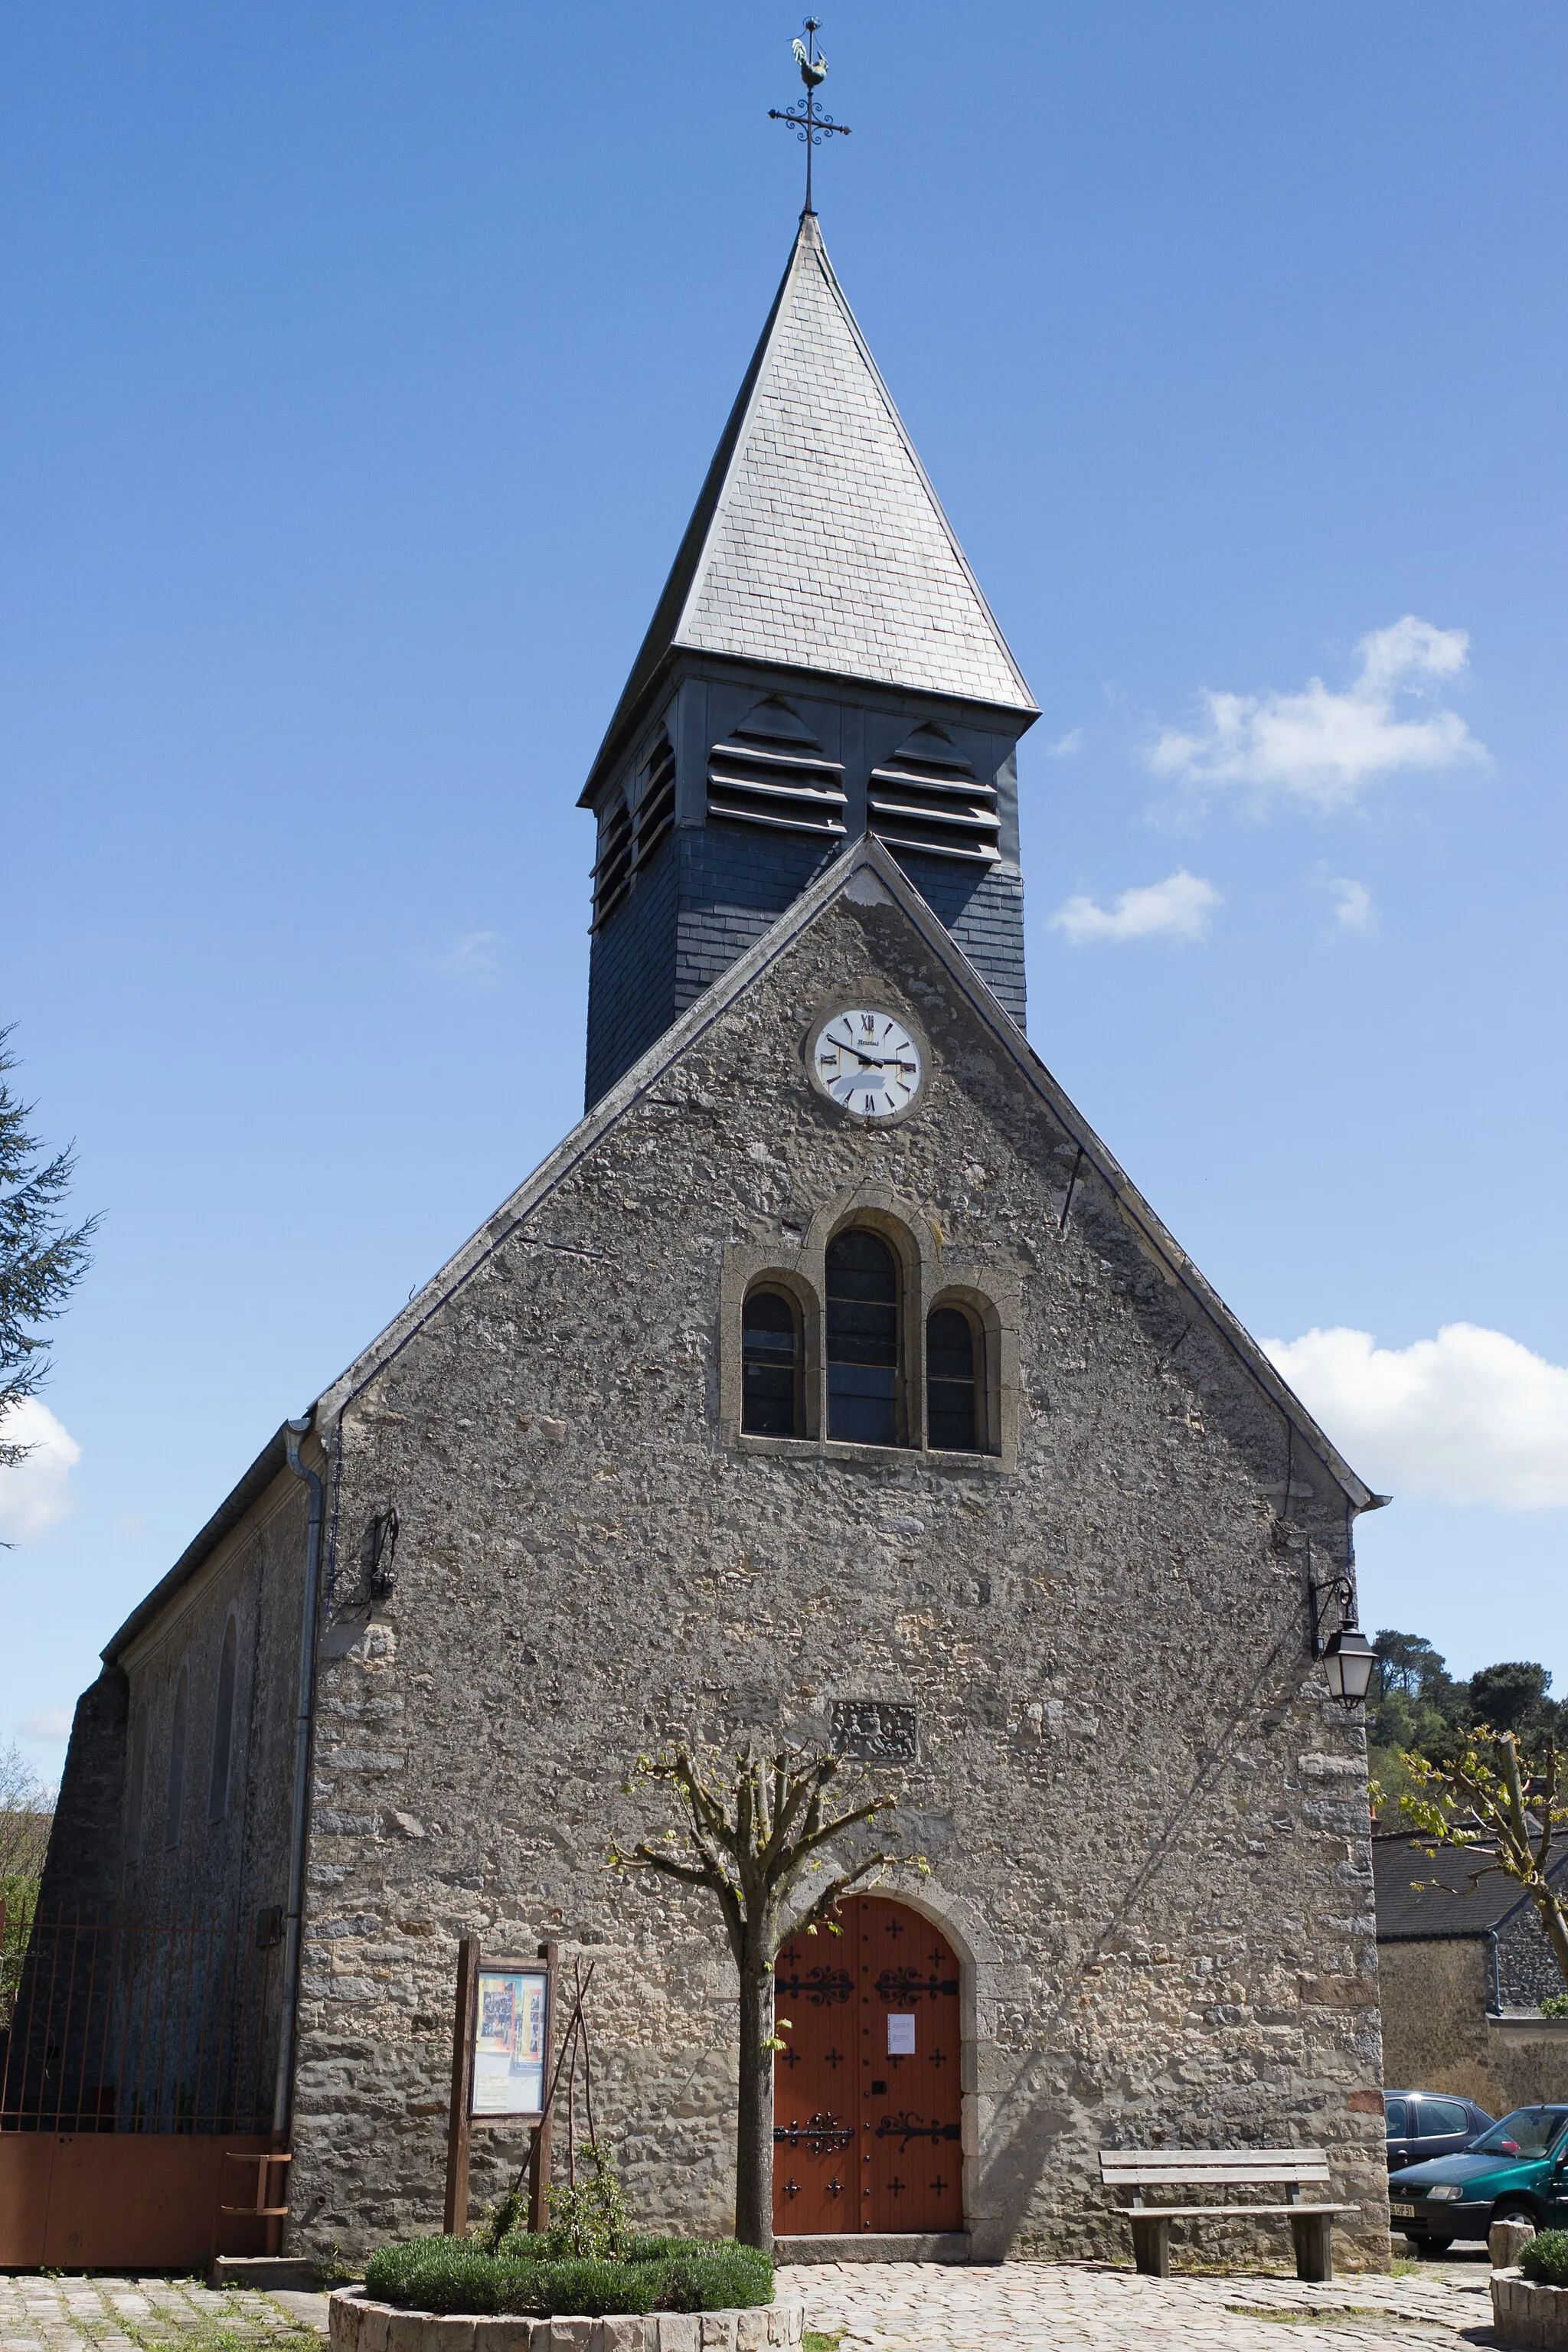 Photo showing: Église de Boissy-le-Cutté, Boissy-le-Cutté, département de l'Essonne, France.